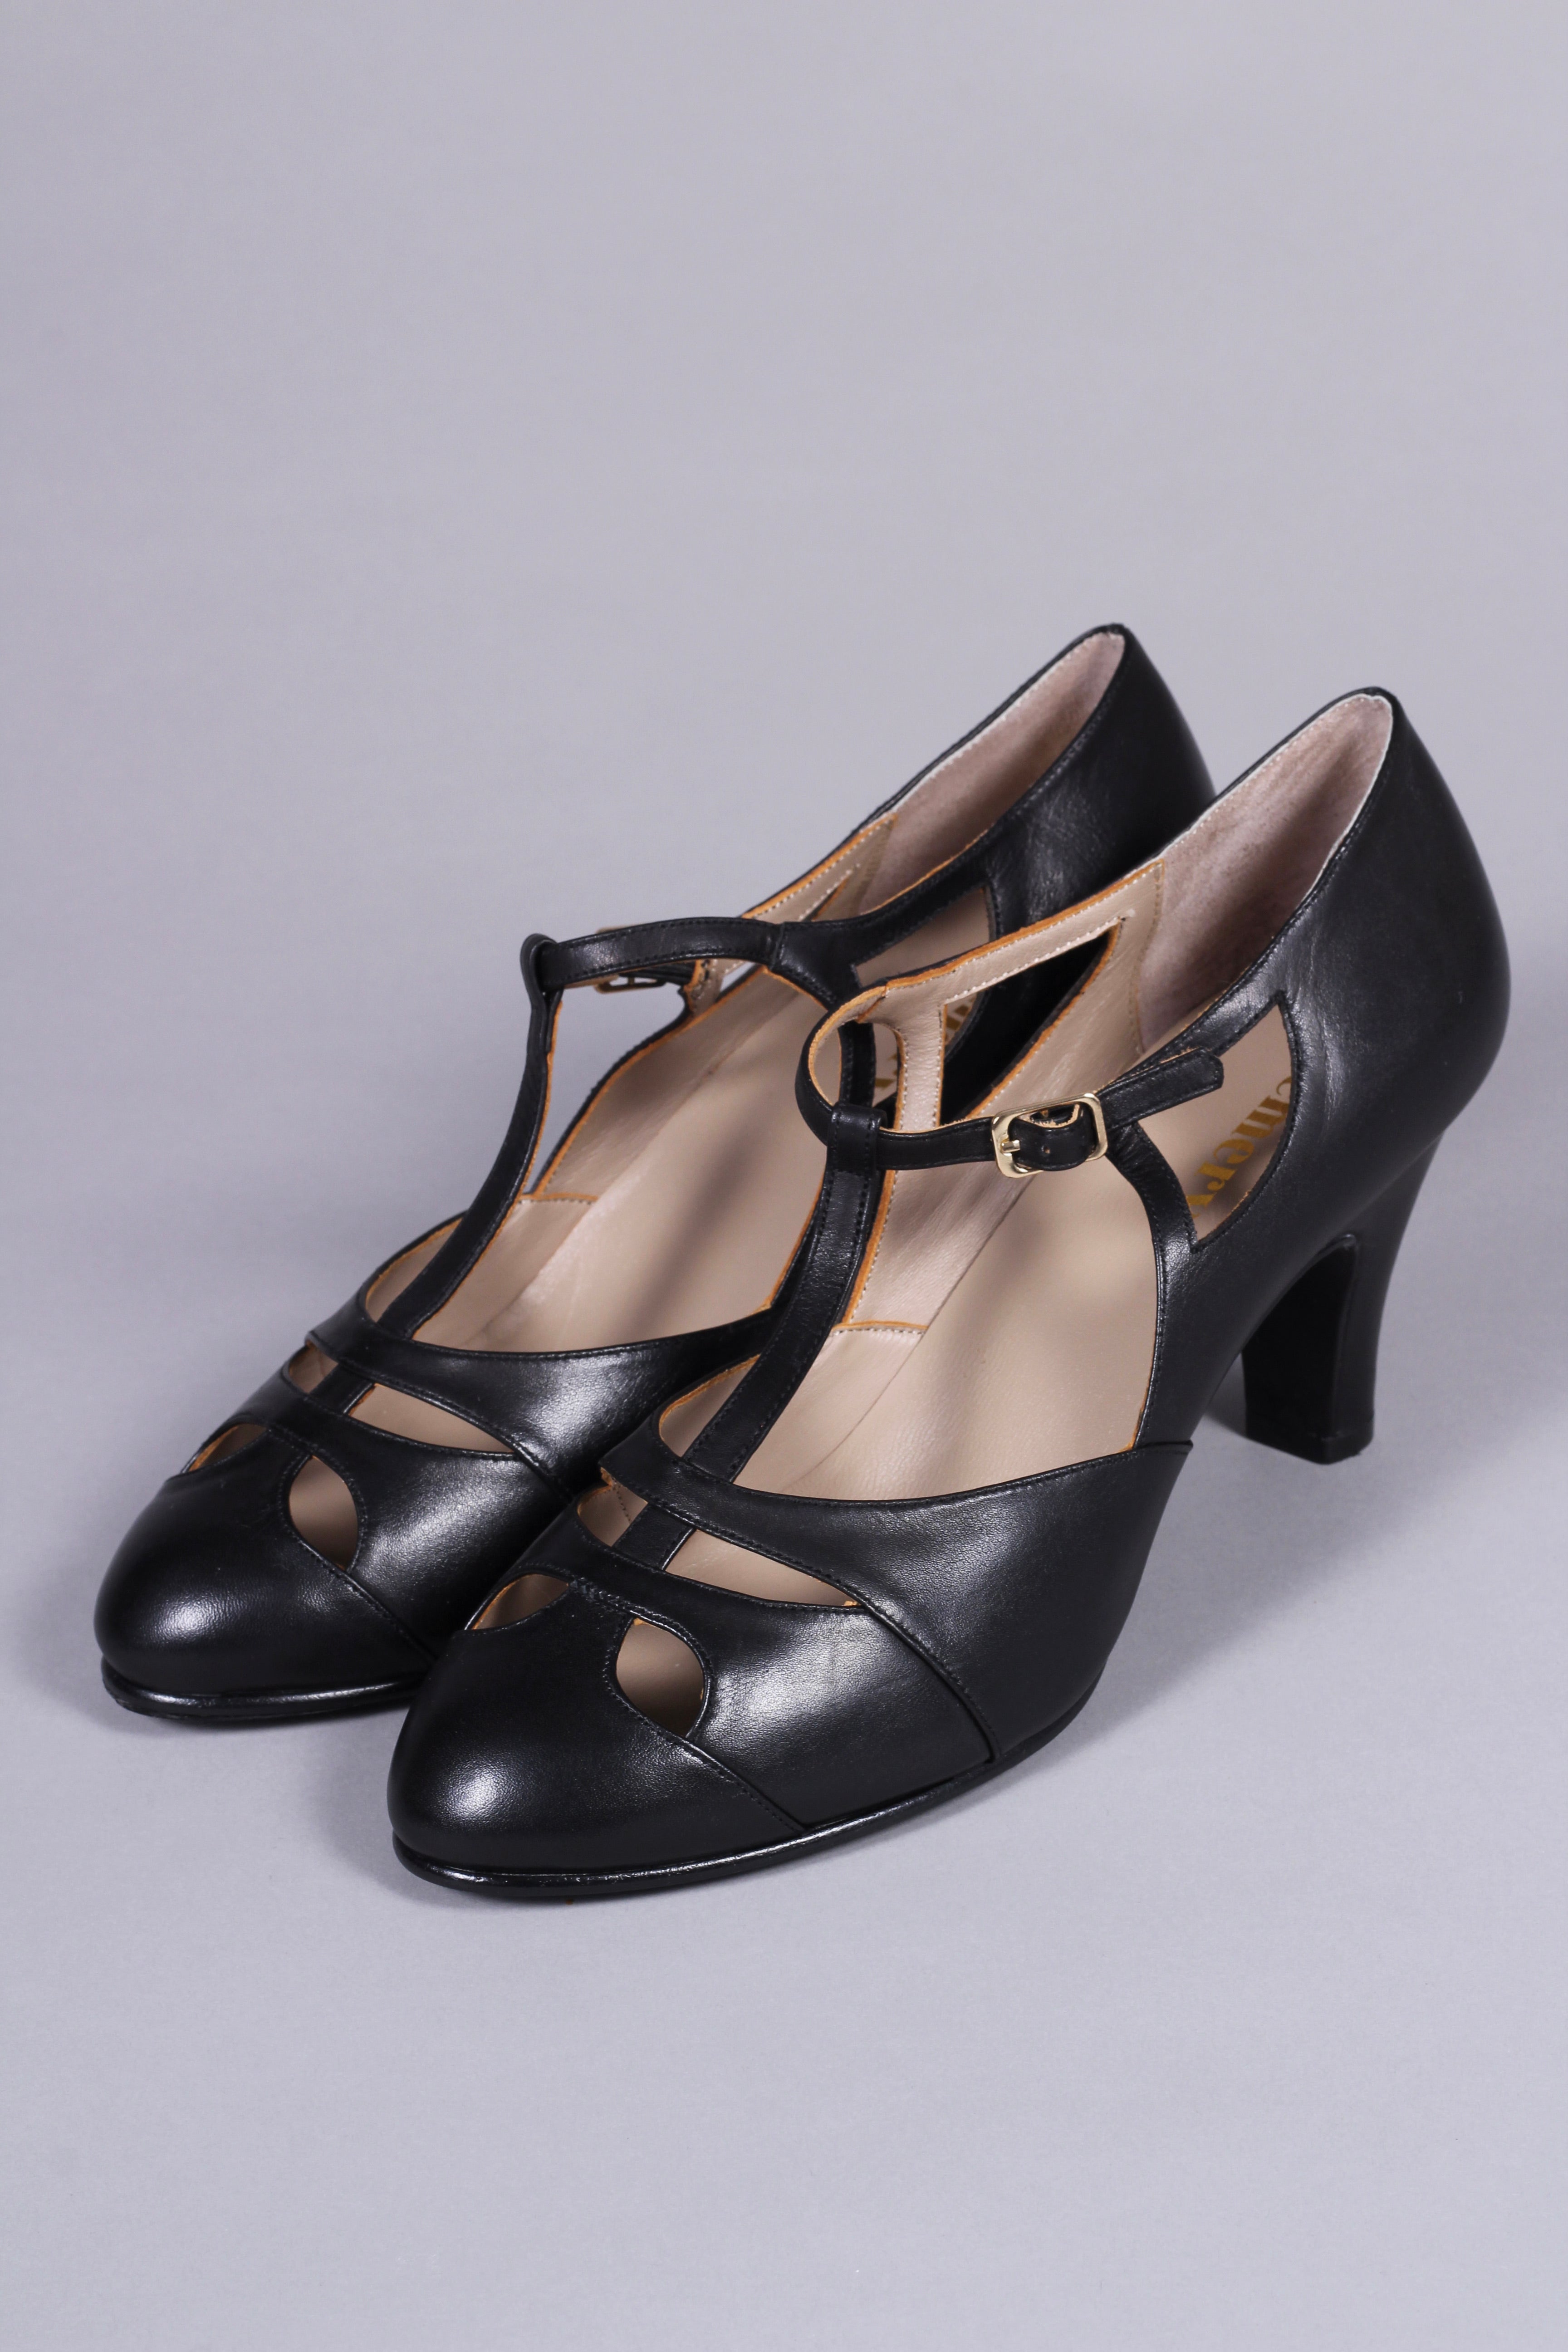 20s / 30s Art Deco inspired evening sandals - Black - Helen